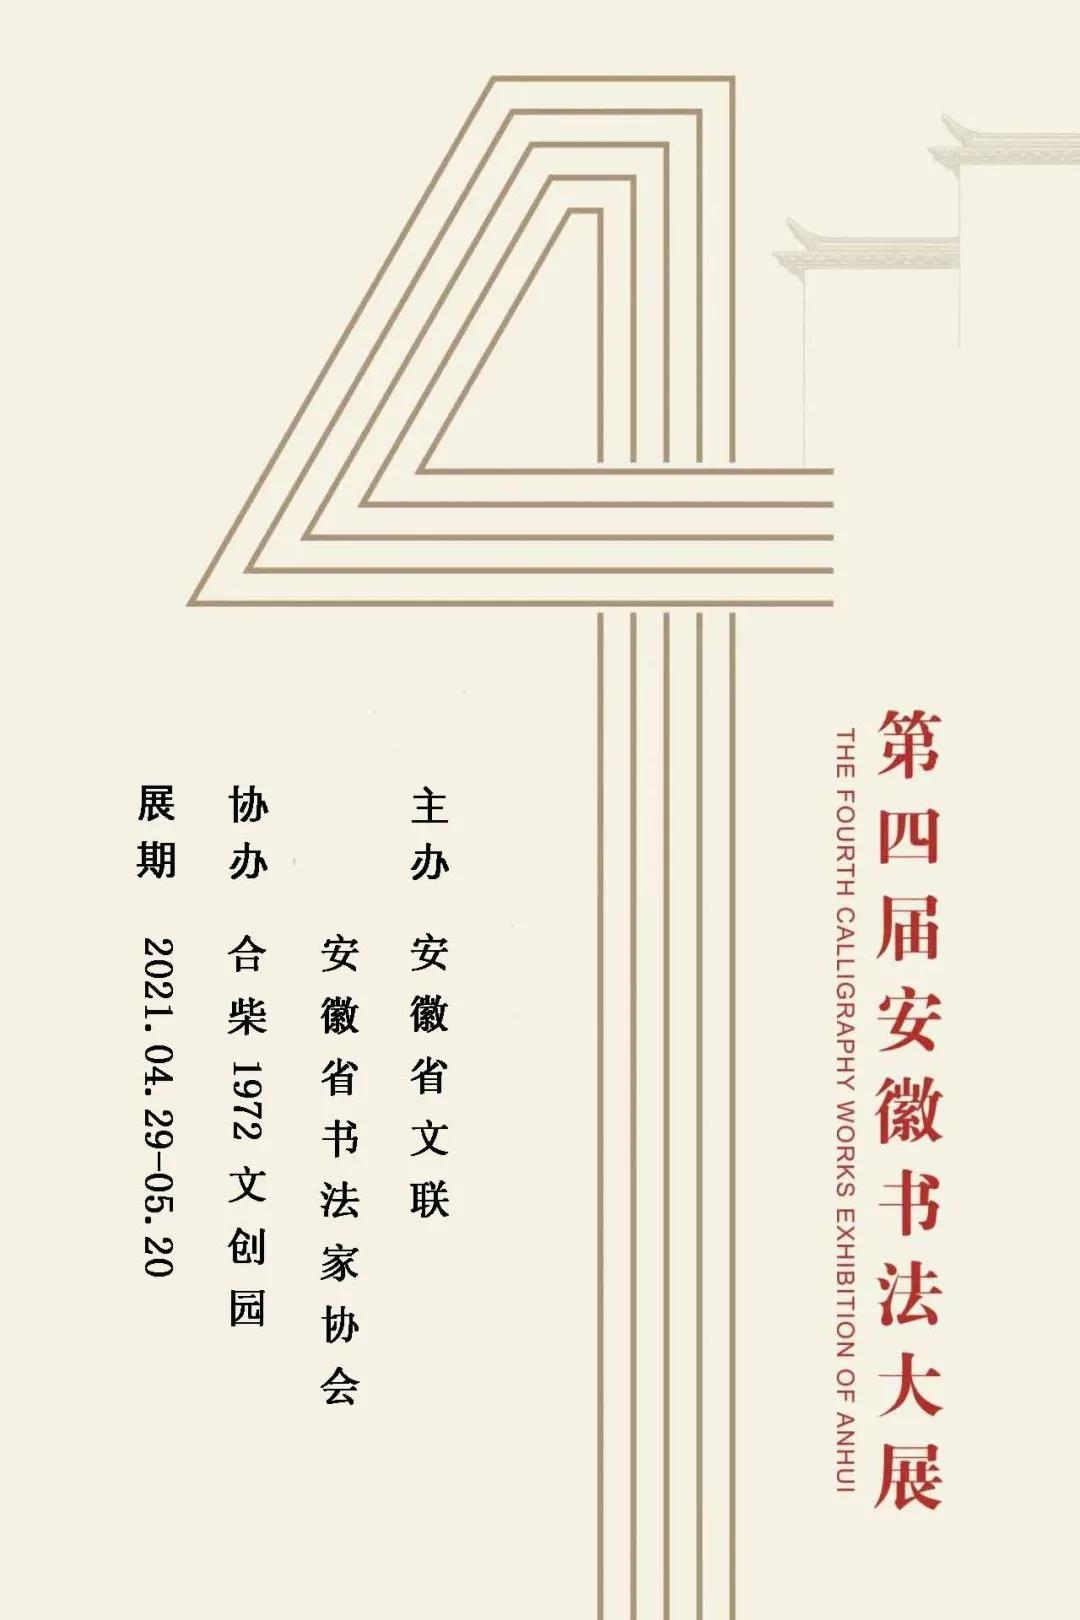 第四届安徽书法大展（巡展）将在合柴1972开展(图1)